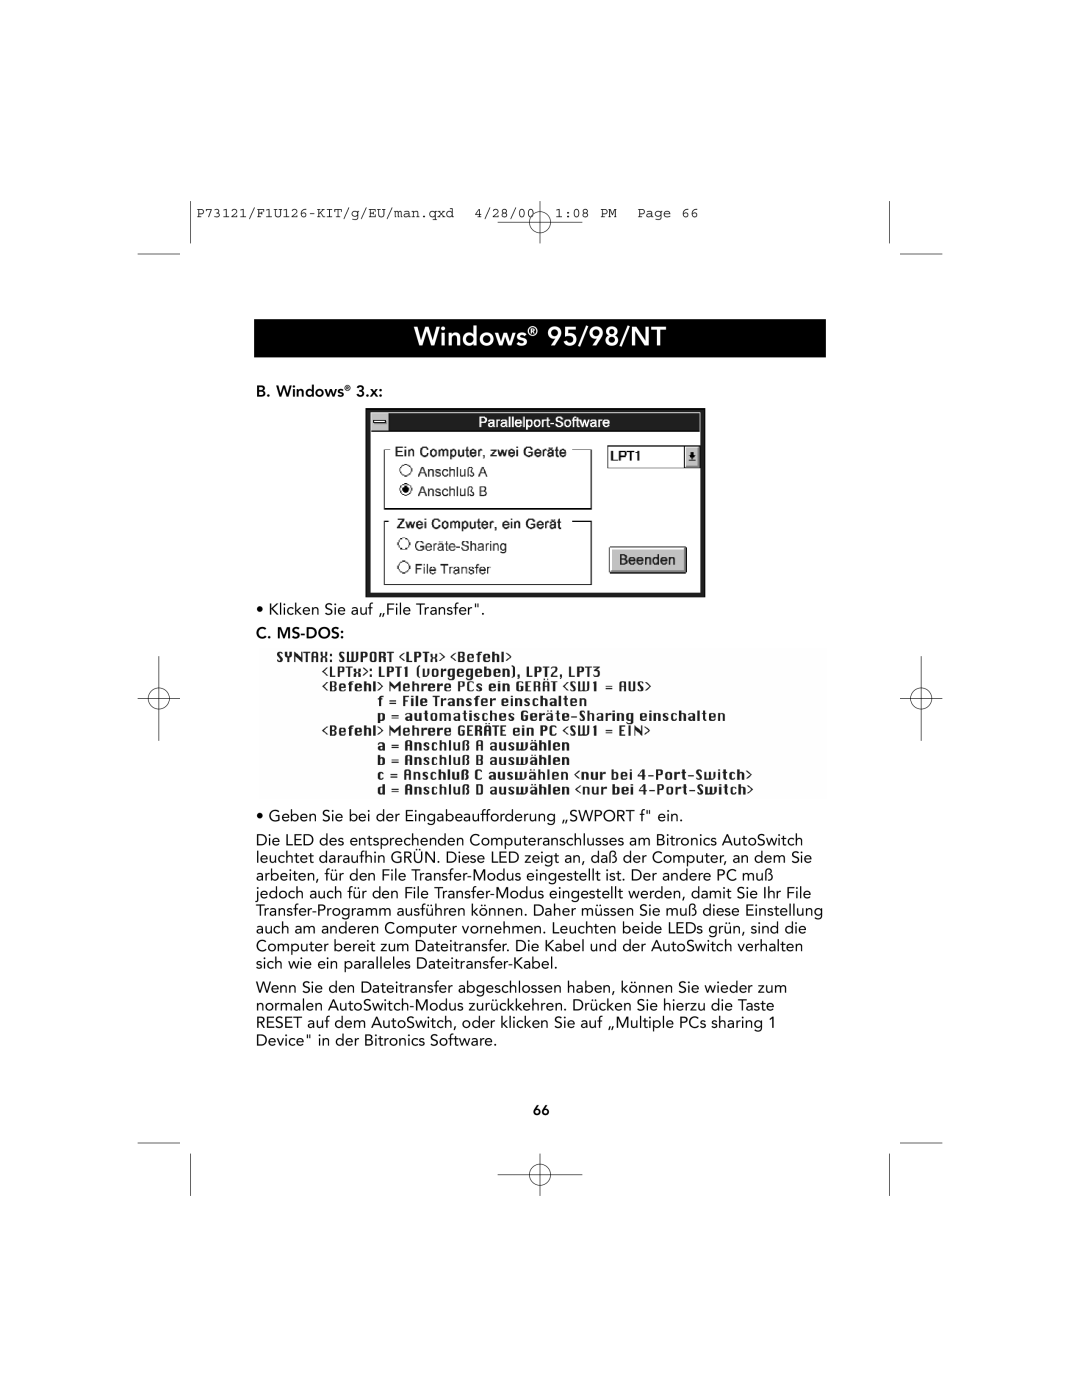 Belkin P73121, F1U126-KIT user manual Windows 95/98/NT 